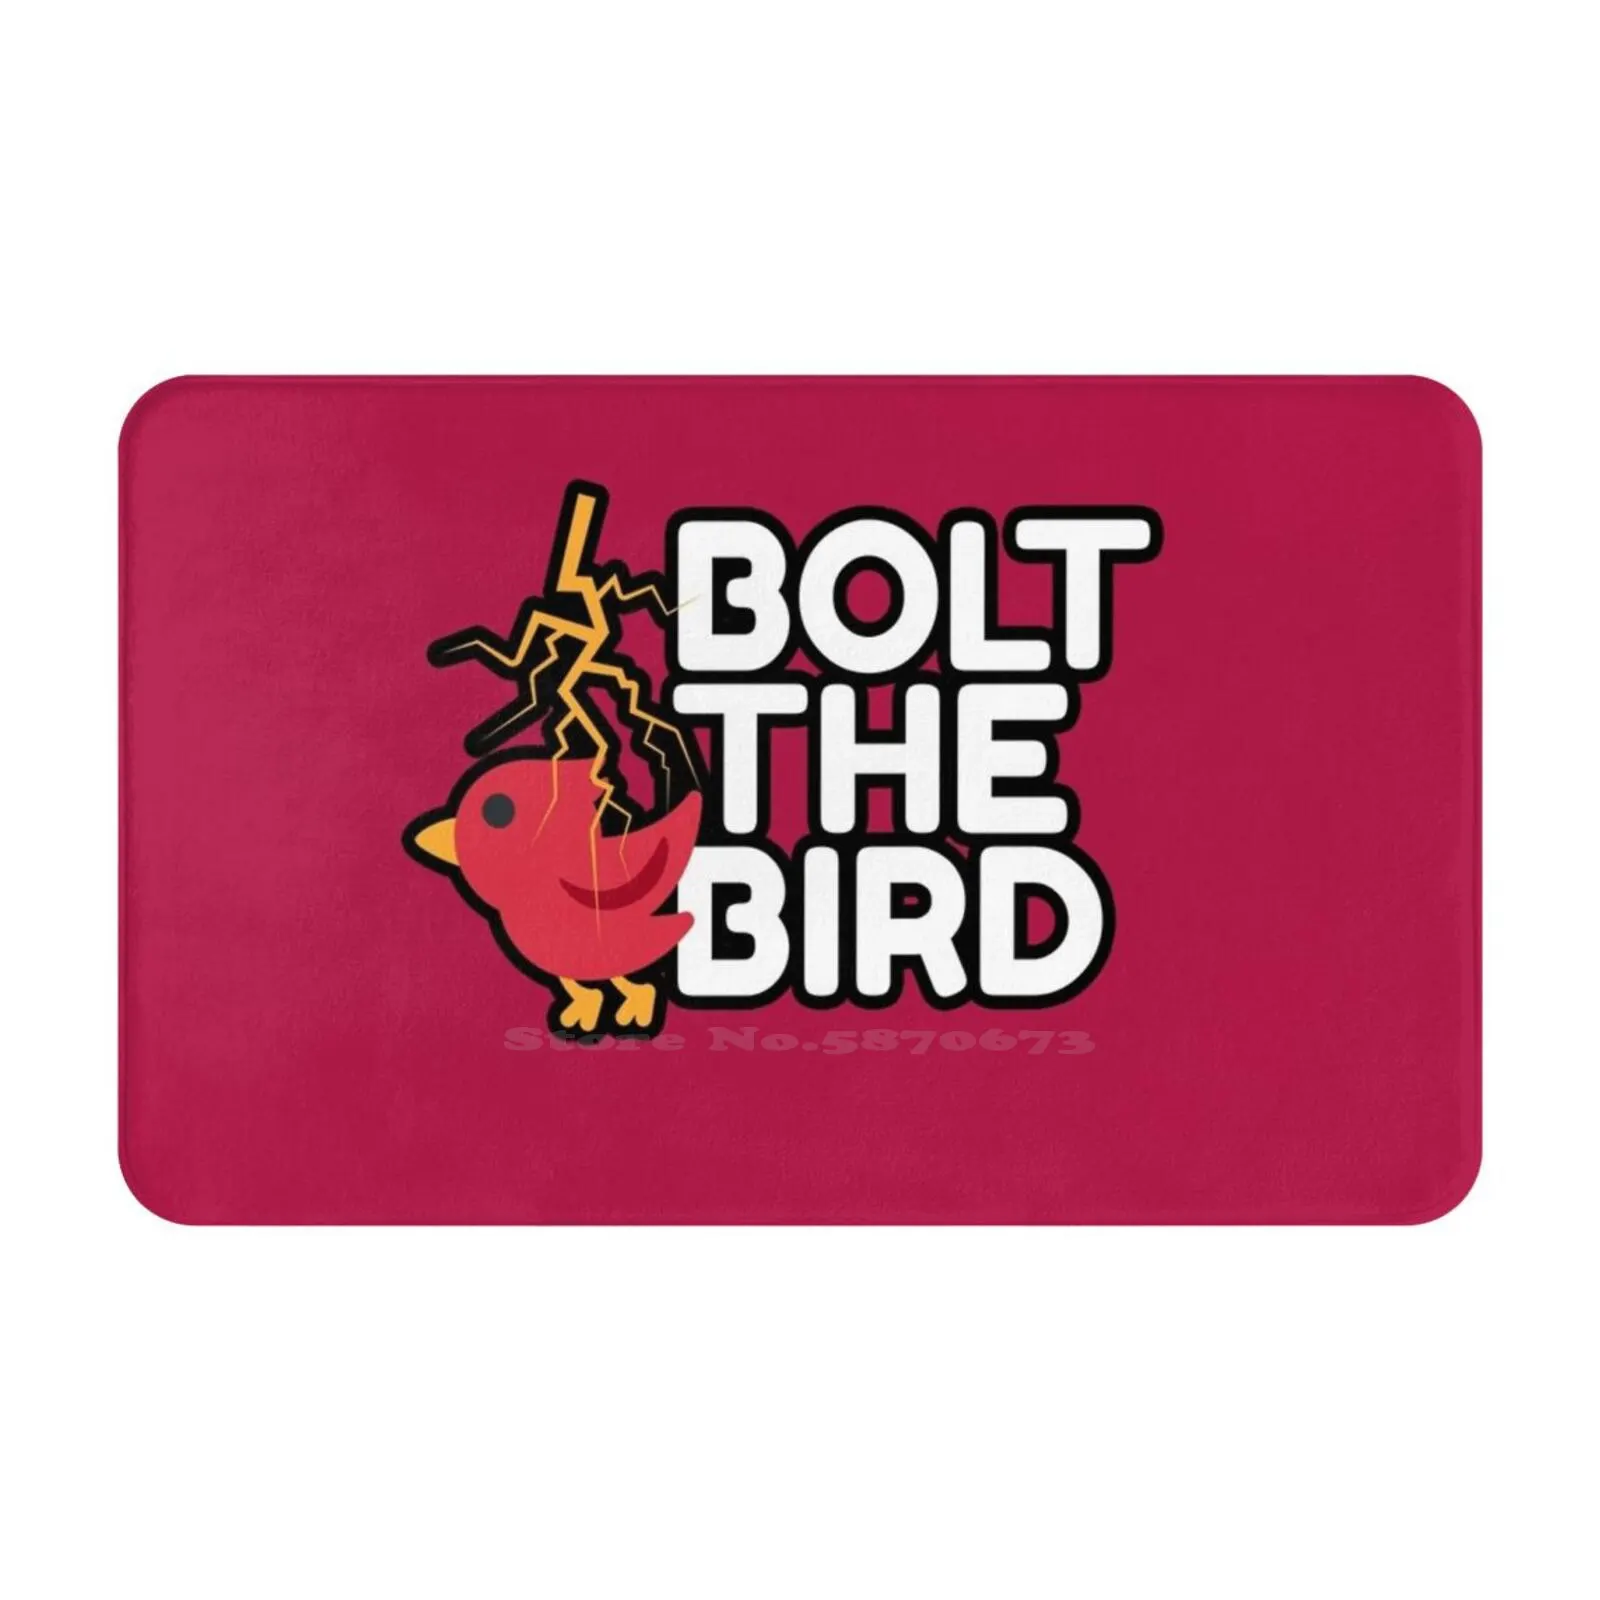 Bolt The Bird | Юмор 3D Мягкий нескользящий коврик, коврик для ног, Красная молния, заклинание юмора, Райская птица, умная стратегия . ' - ' . 0